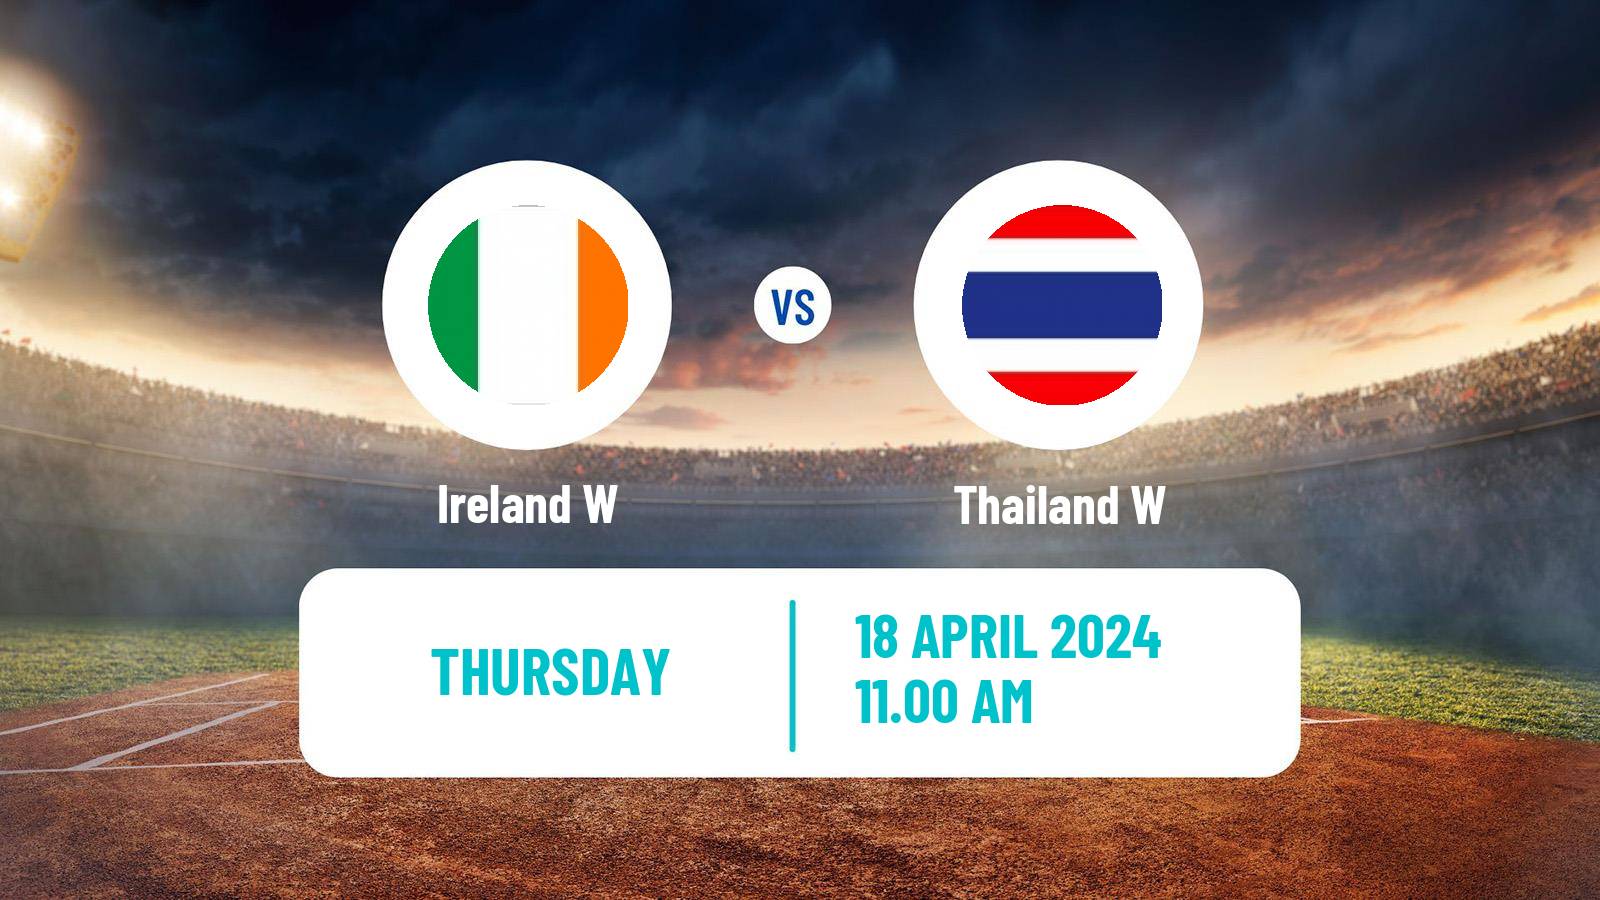 Cricket Twenty20 International Women Ireland W - Thailand W